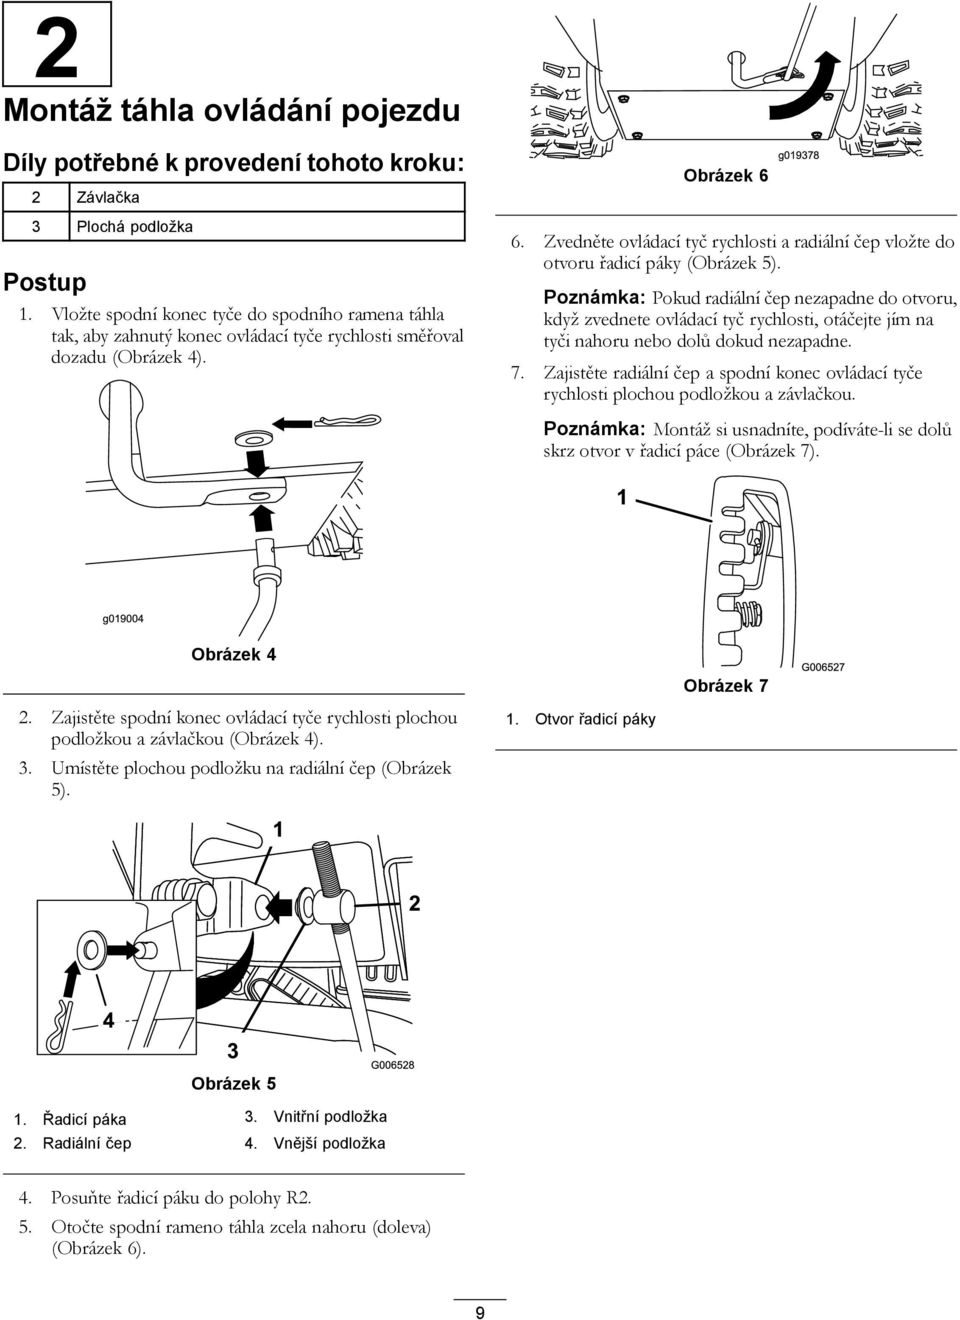 Zvedněte ovládací tyč rychlosti a radiální čep vložte do otvoru řadicí páky (Obrázek 5).